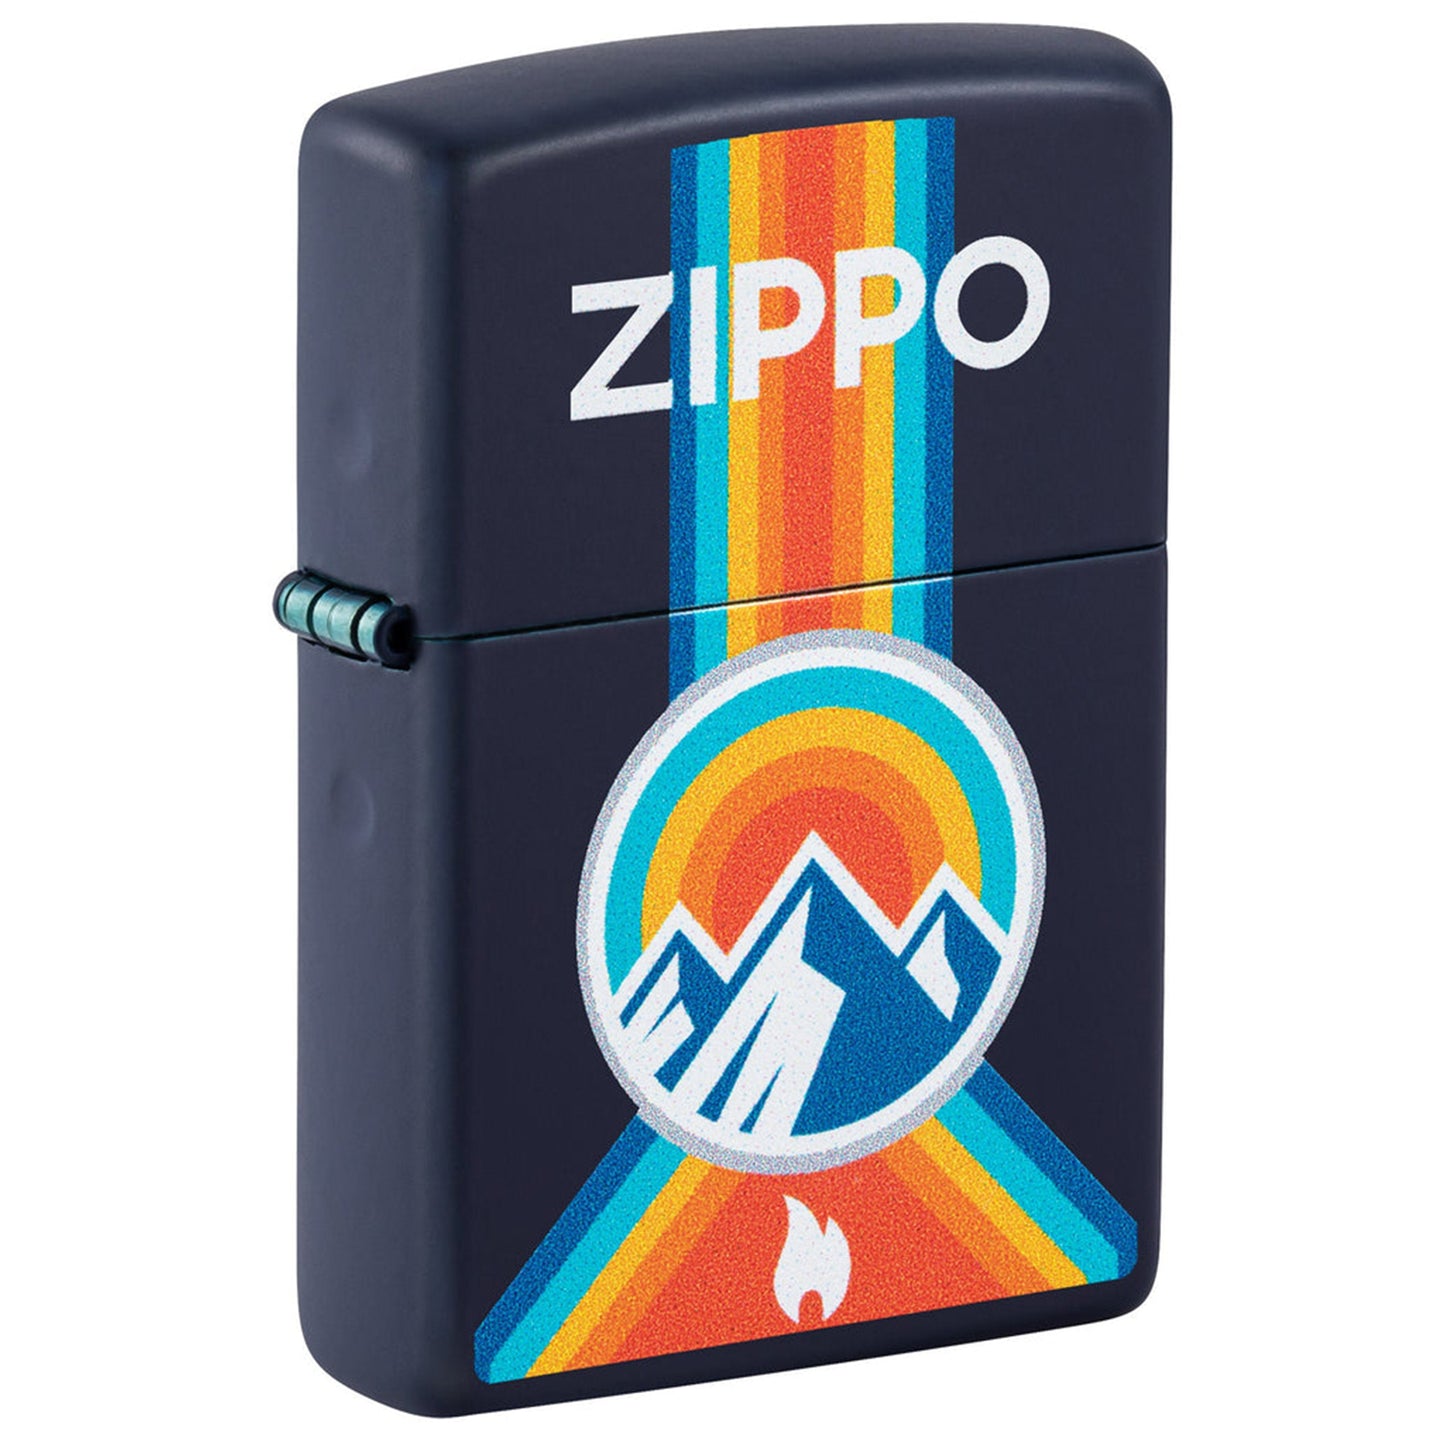 Zippo Windproof Lighter : Outdoor Design 